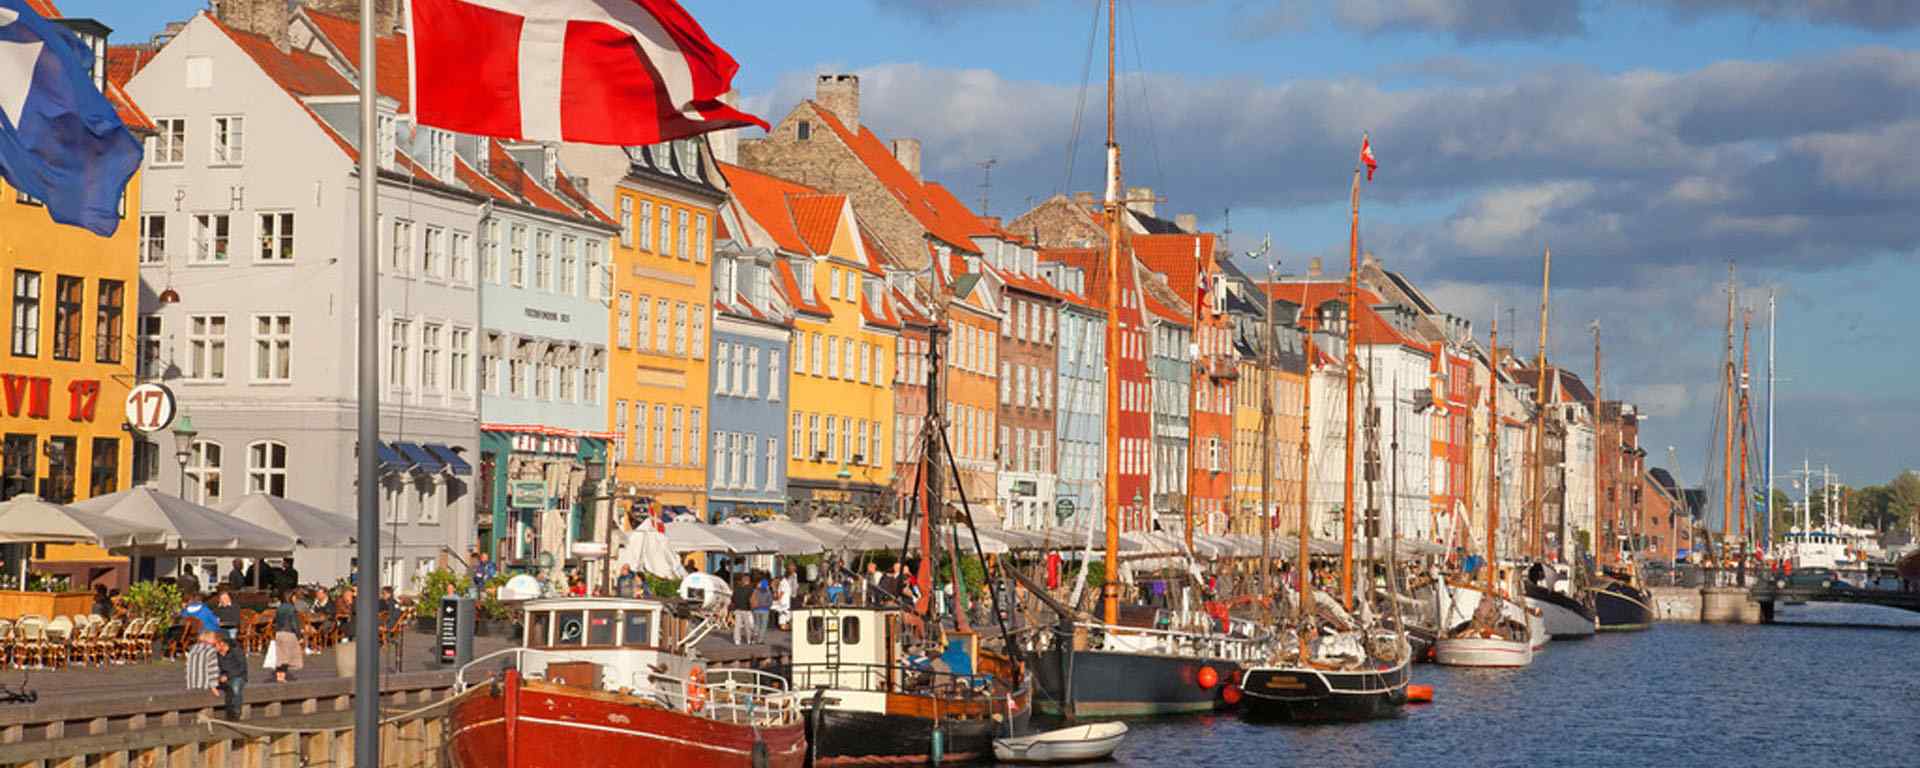 丹麦_丹麦旅游_丹麦哥本哈根_哥本哈根大学_丹麦小镇风光壁纸